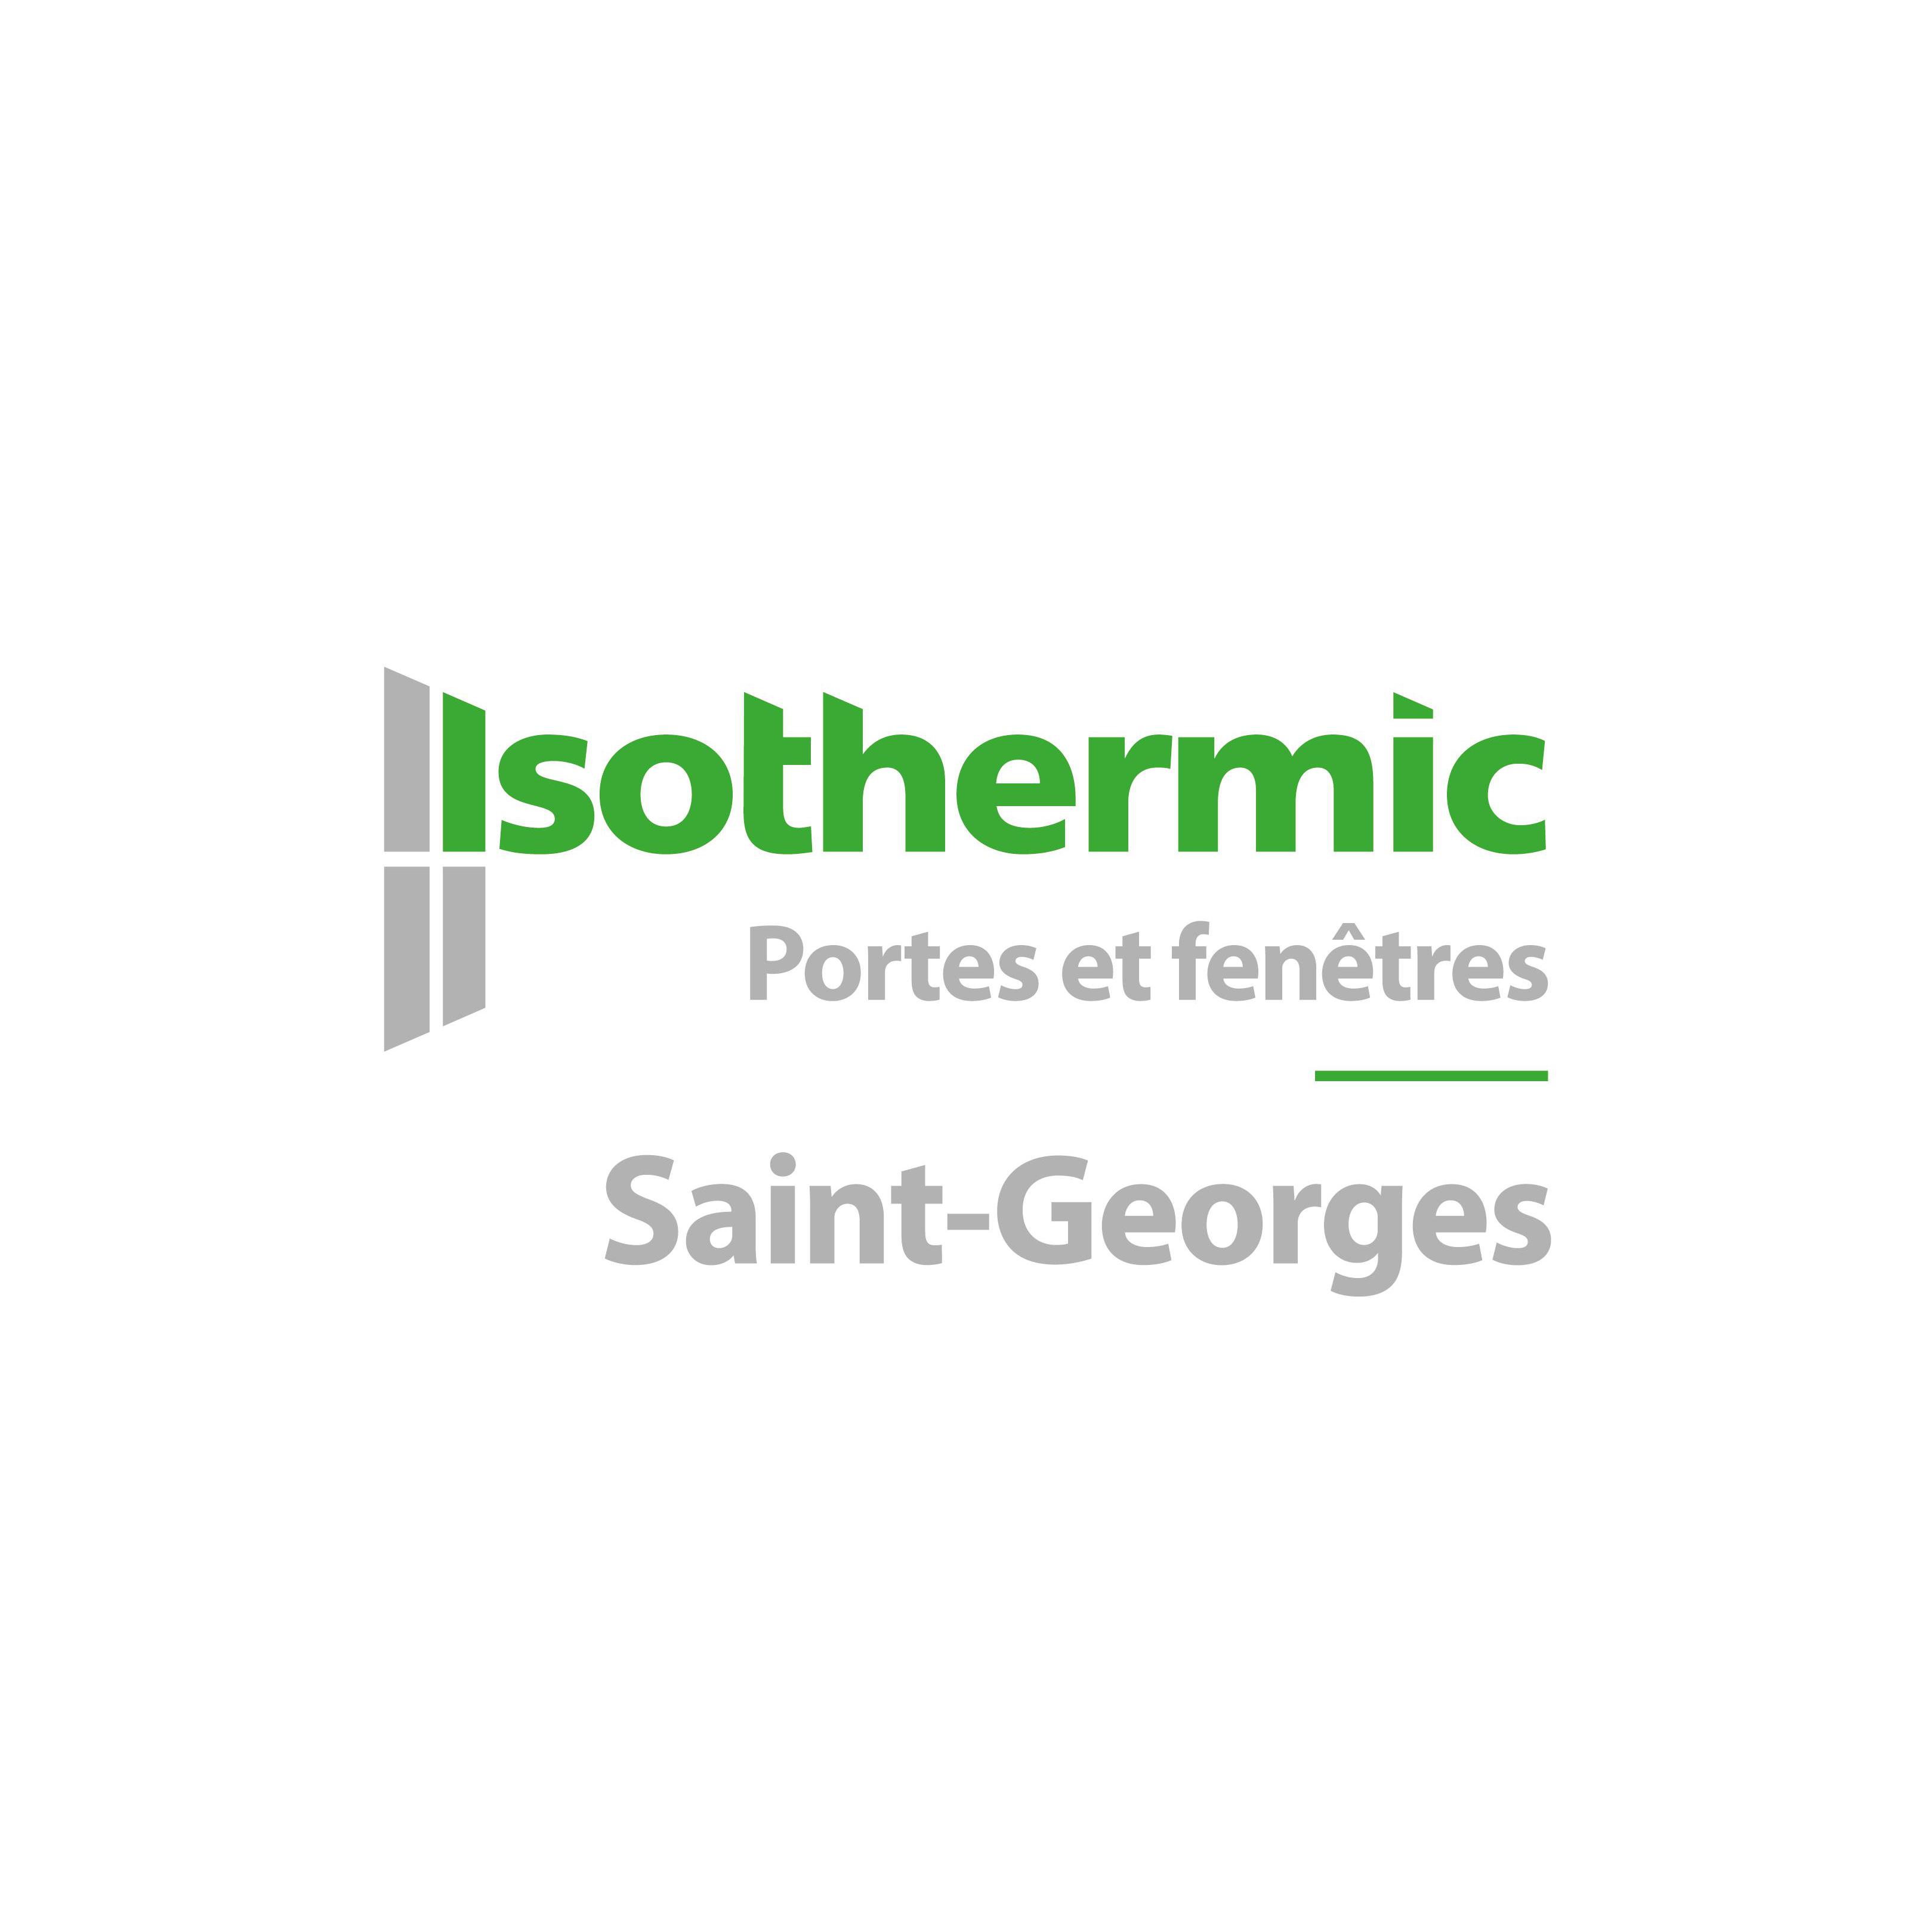 Isothermic portes et fenêtres | Saint-Georges CLOSED